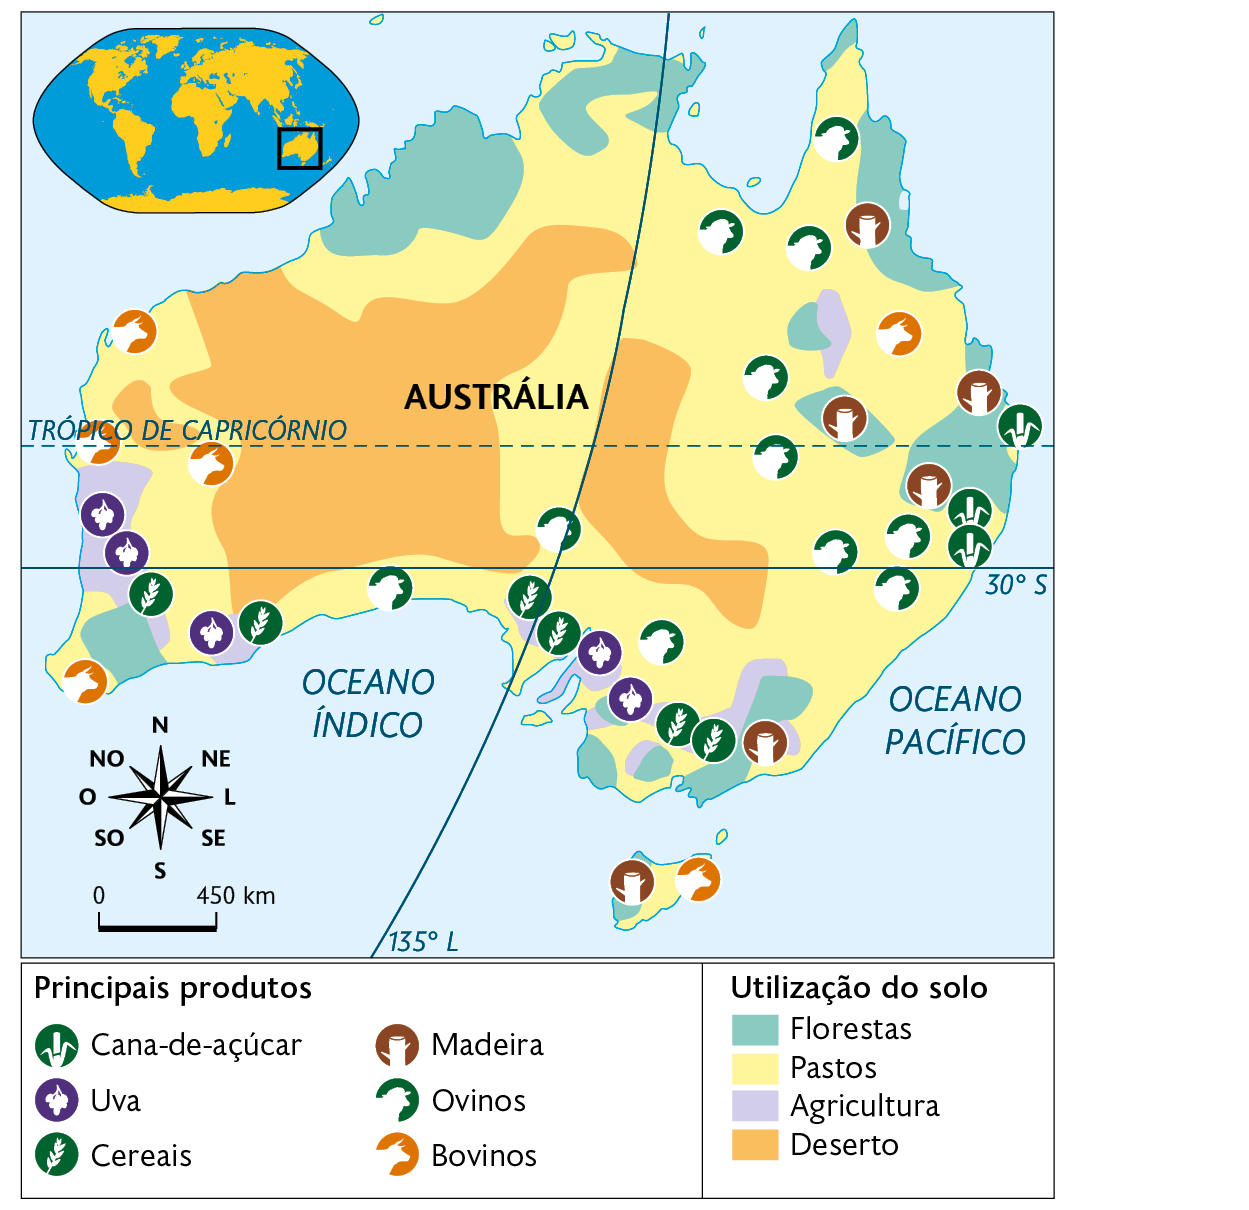 Mapa. Agropecuária da Austrália (2013). Principais produtos: Cana-de-açúcar, Uva, Cereais, Madeira, Ovinos, Bovinos encontrados no oeste, sul e nordeste. Utilização do solo. Florestas: diversas áreas no norte, nordeste, sudoeste e sul. Pastos: ocupando grande parte do território no oeste, norte, e porção leste. Agricultura: pequenas áreas no sudoeste, sul e nordeste. Deserto: grande área no oeste e faixa no centro. No canto superior esquerdo, mapa de localização, planisfério destacando a região descrita. No canto inferior esquerdo, a rosa dos ventos e a escala: 450 quilômetros por centímetro.